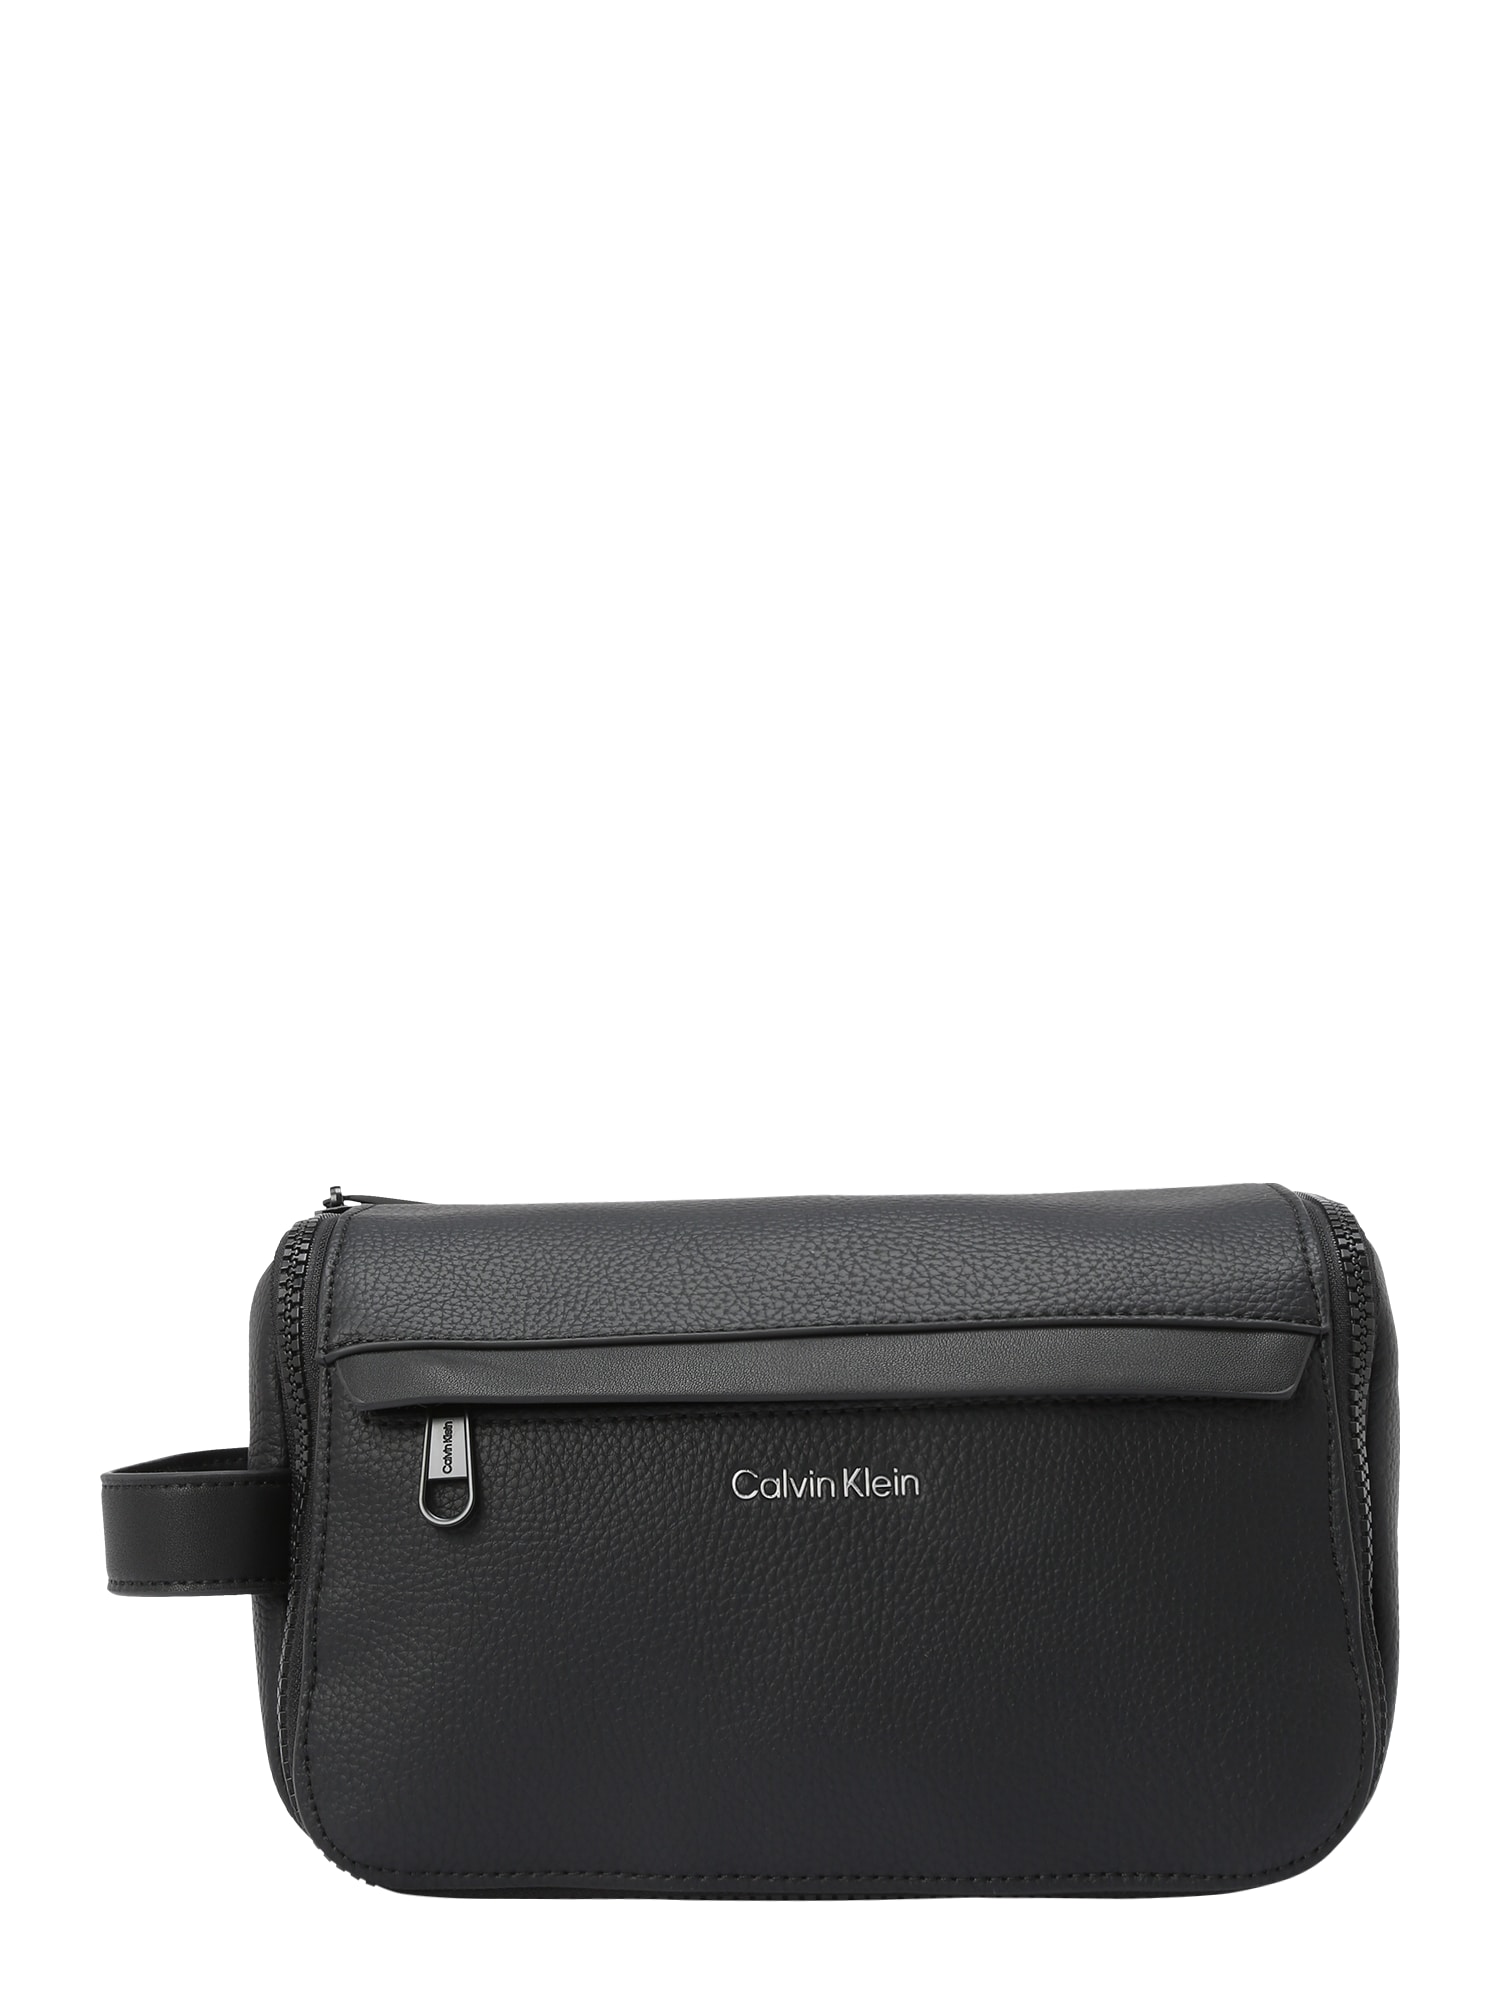 Calvin Klein Tuoleto reikmenų krepšys juoda / sidabrinė